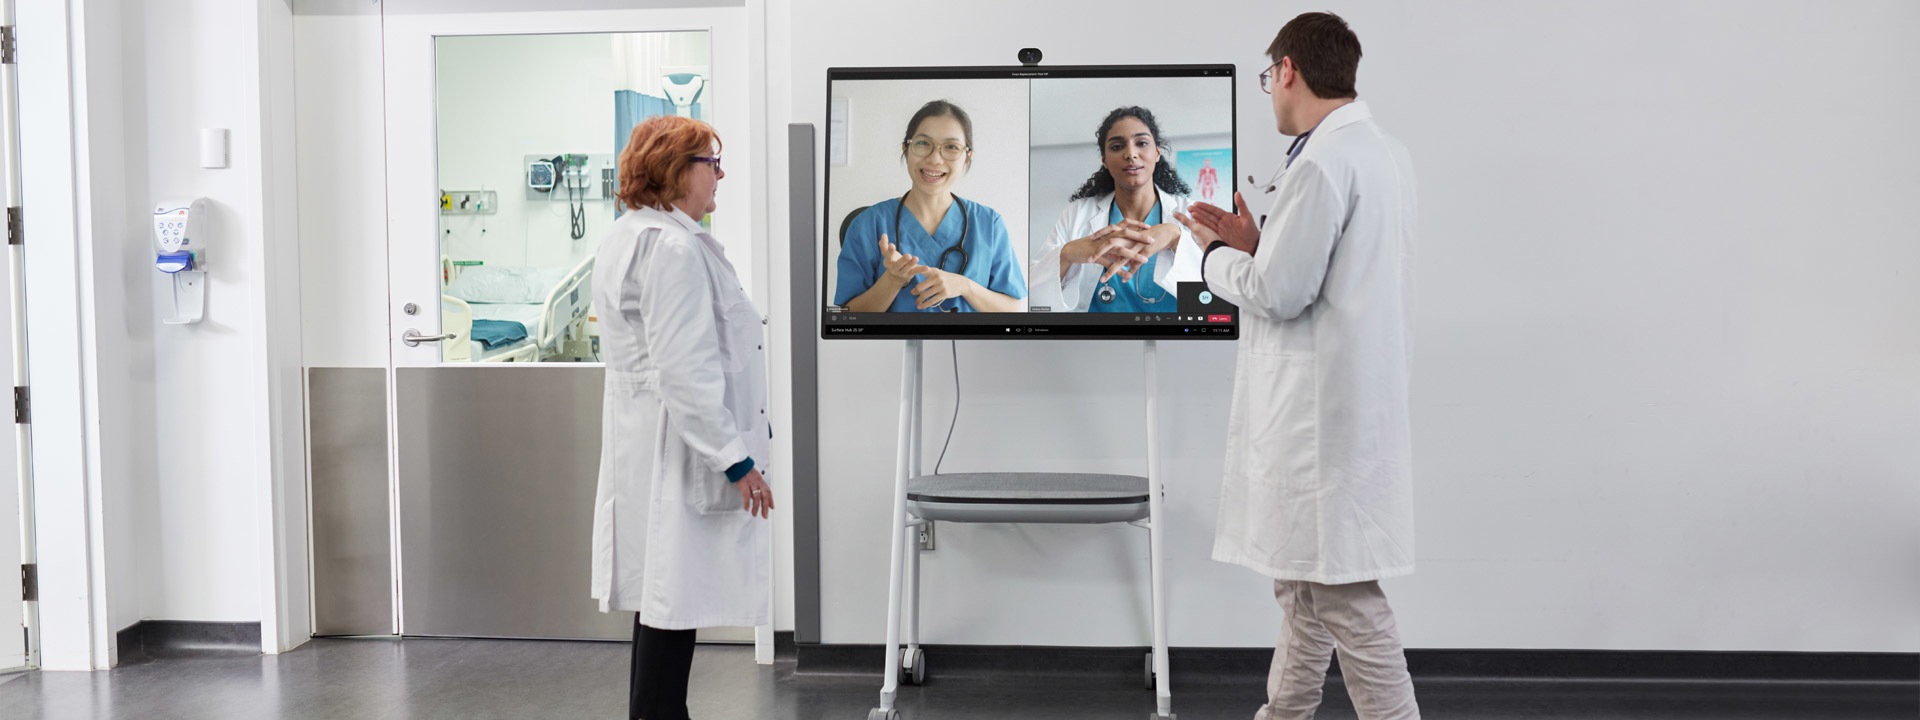 Zwei medizinische Fachkräfte nehmen an einem Team-Videoanruf in einer Krankenhausumgebung teil